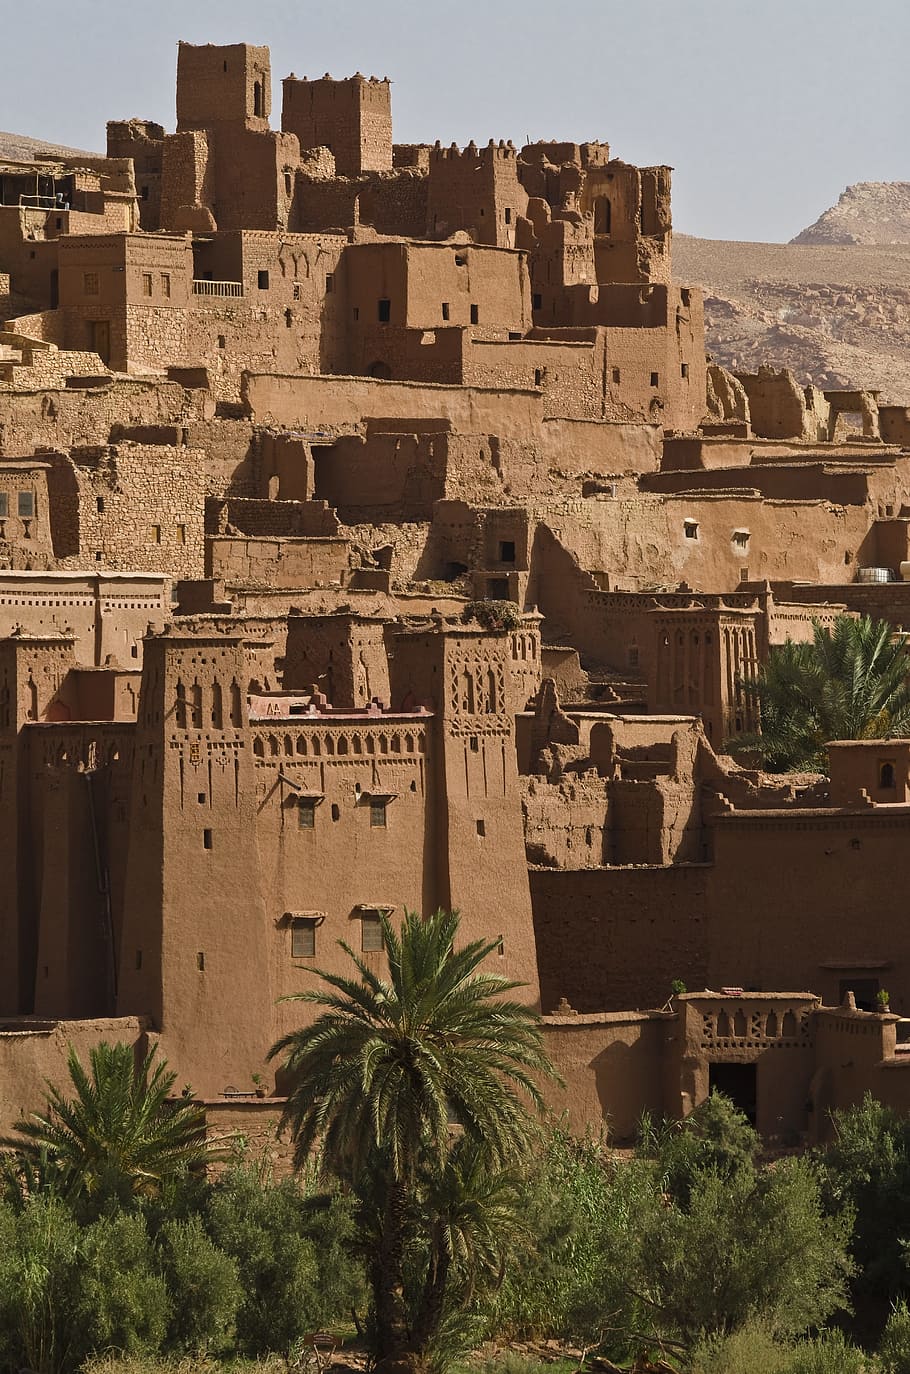 Ait, Desert, City, Oasis, ait ben haddou, desert city, oasis town, world heritage, old ruin, history